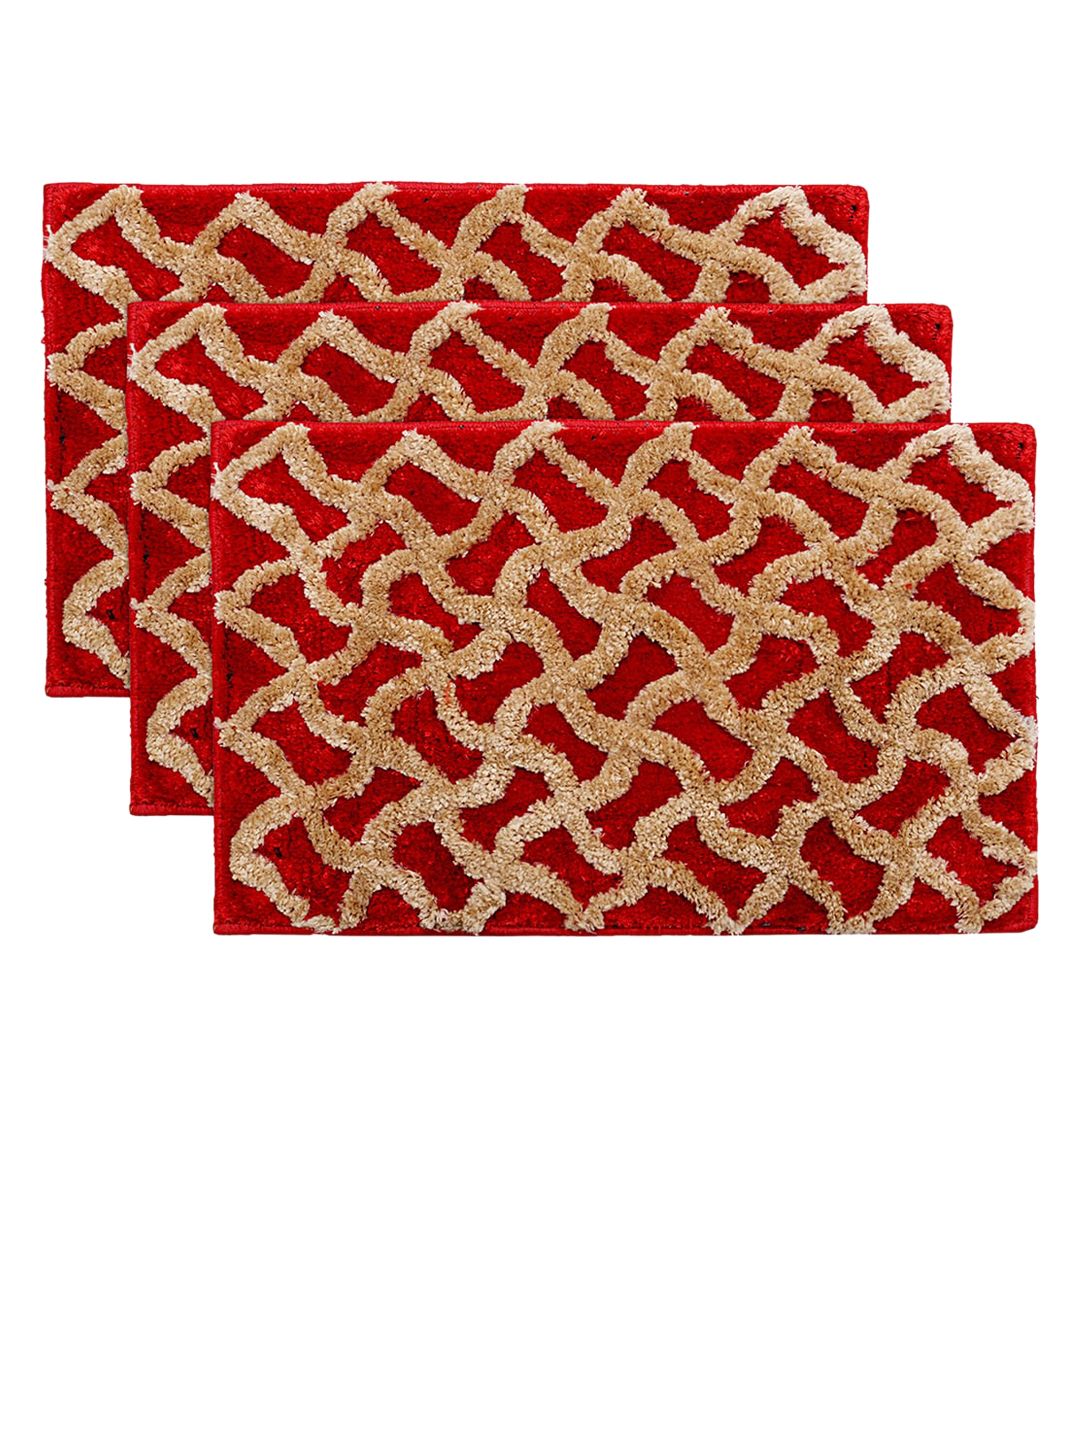 Kuber Industries Set Of 3 Red & Beige Printed Velvet Anti-Skid Doormats Price in India